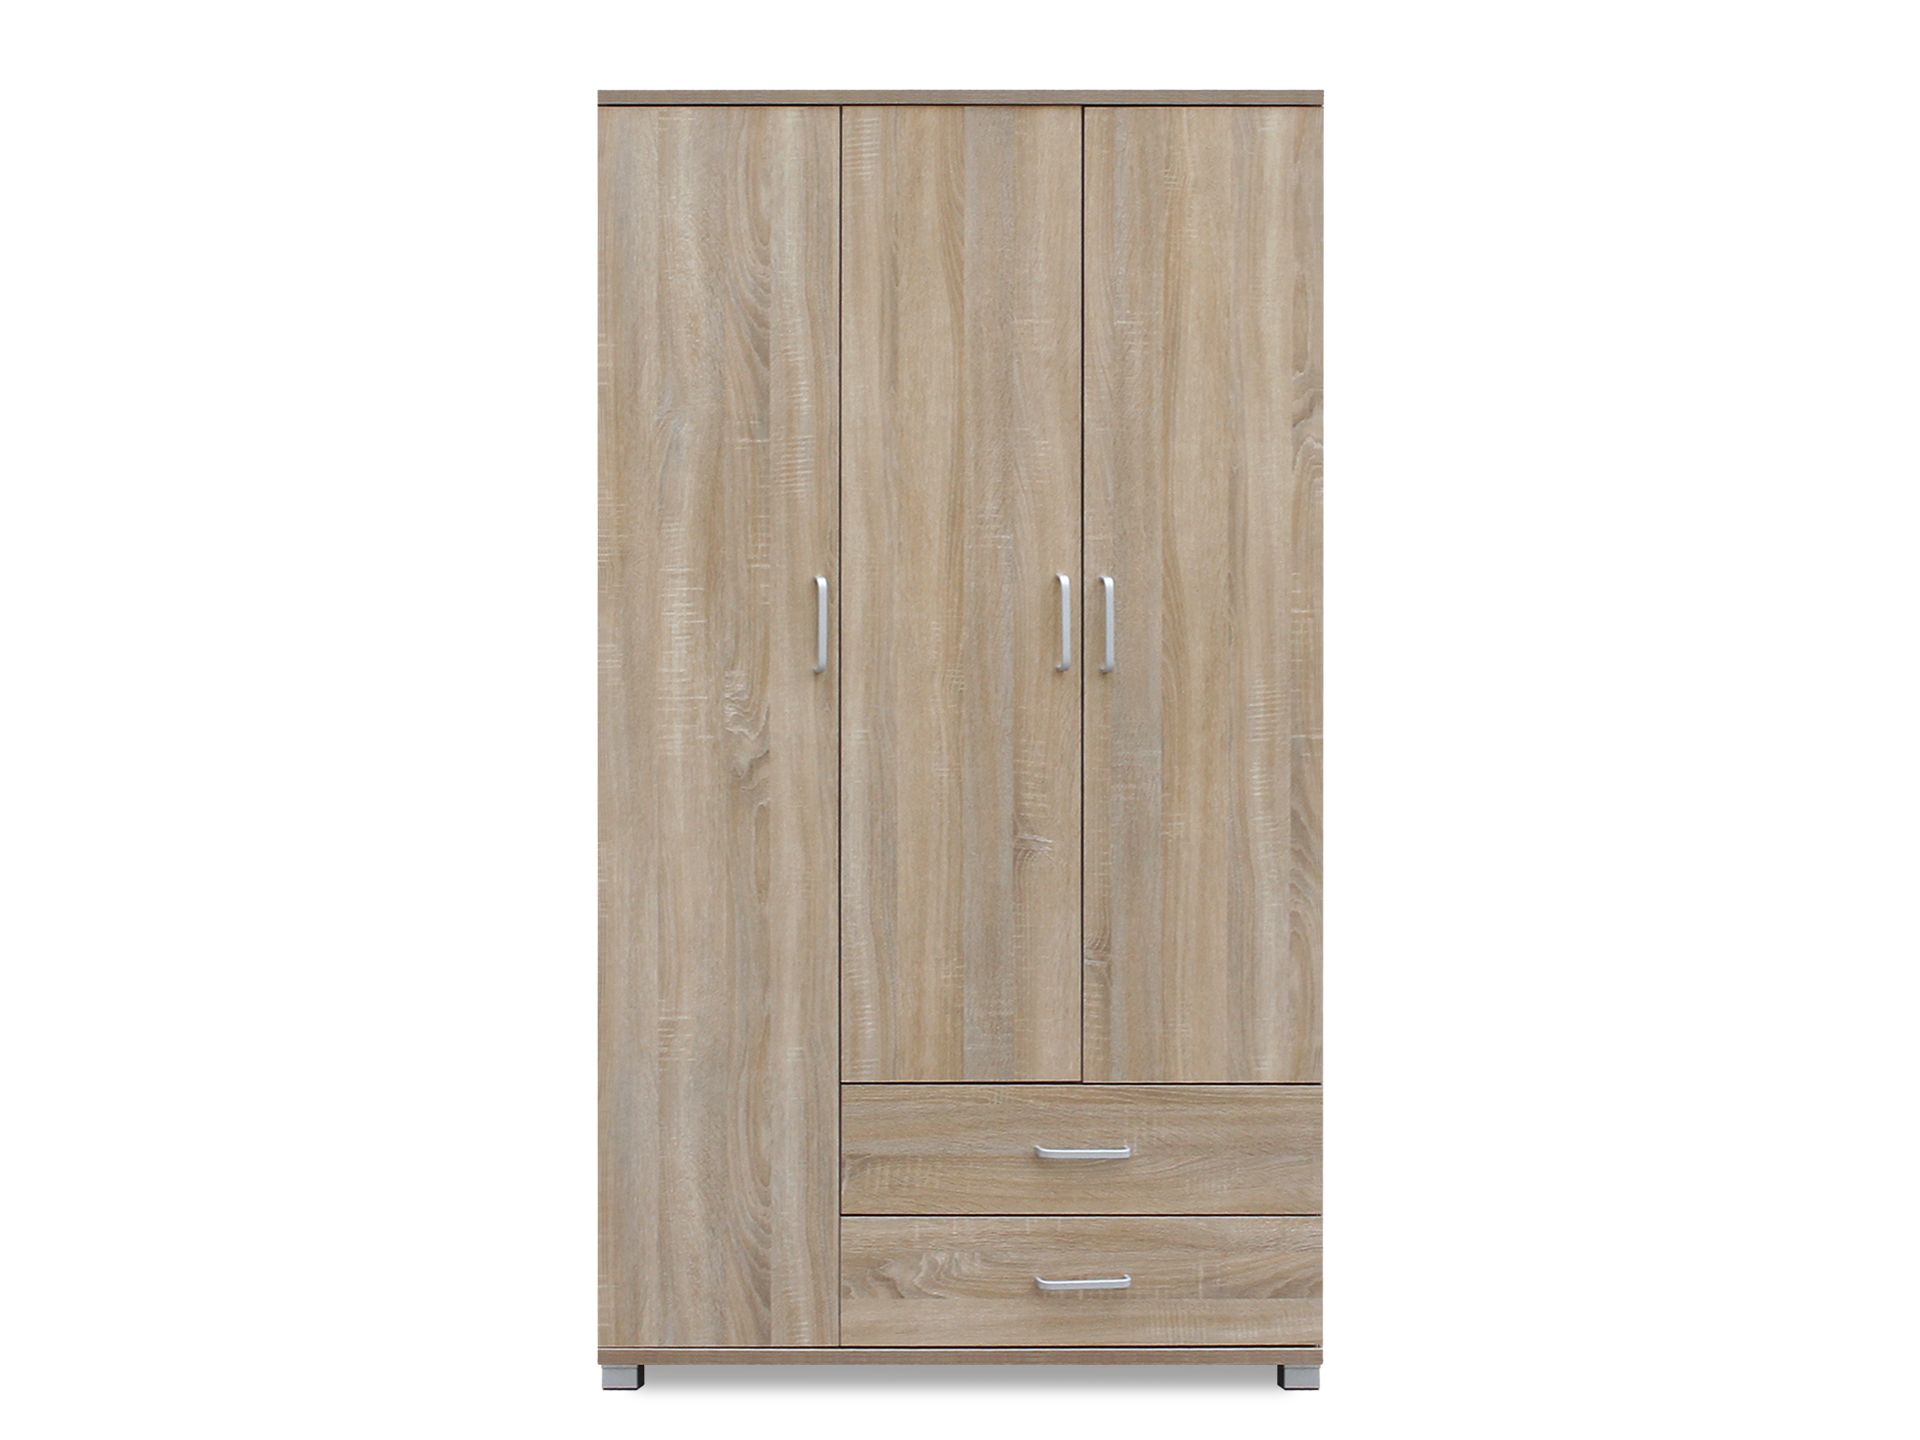 Bram 3 Door Wardrobe with 2 Drawers - Oak